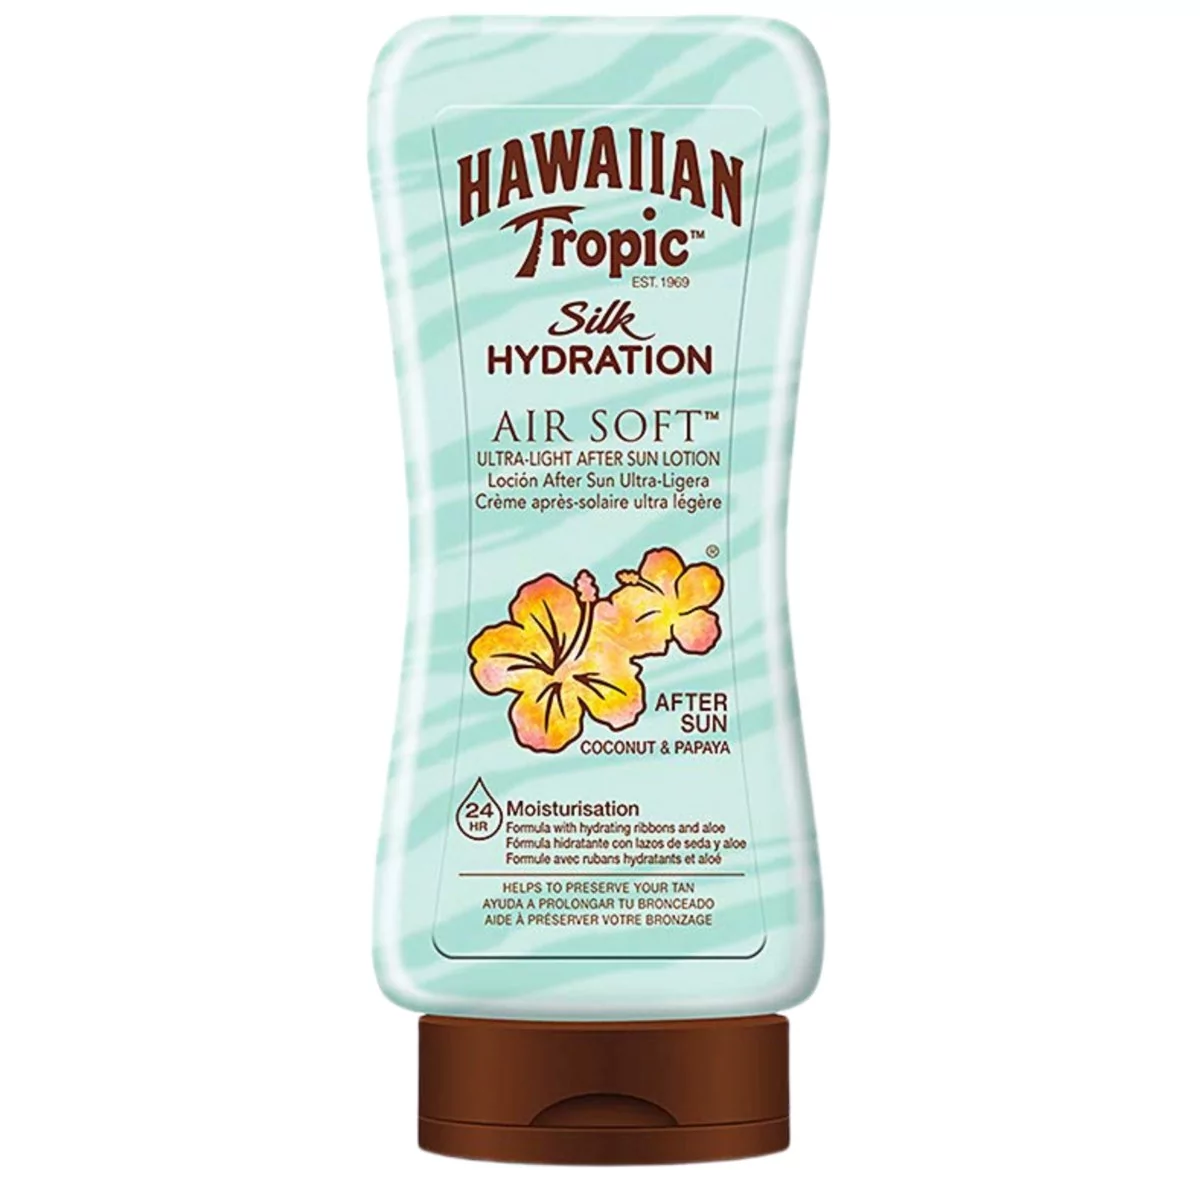 Hawaiian Tropic Silk Hydration Air Soft After Sun, 180 ML Y301044700